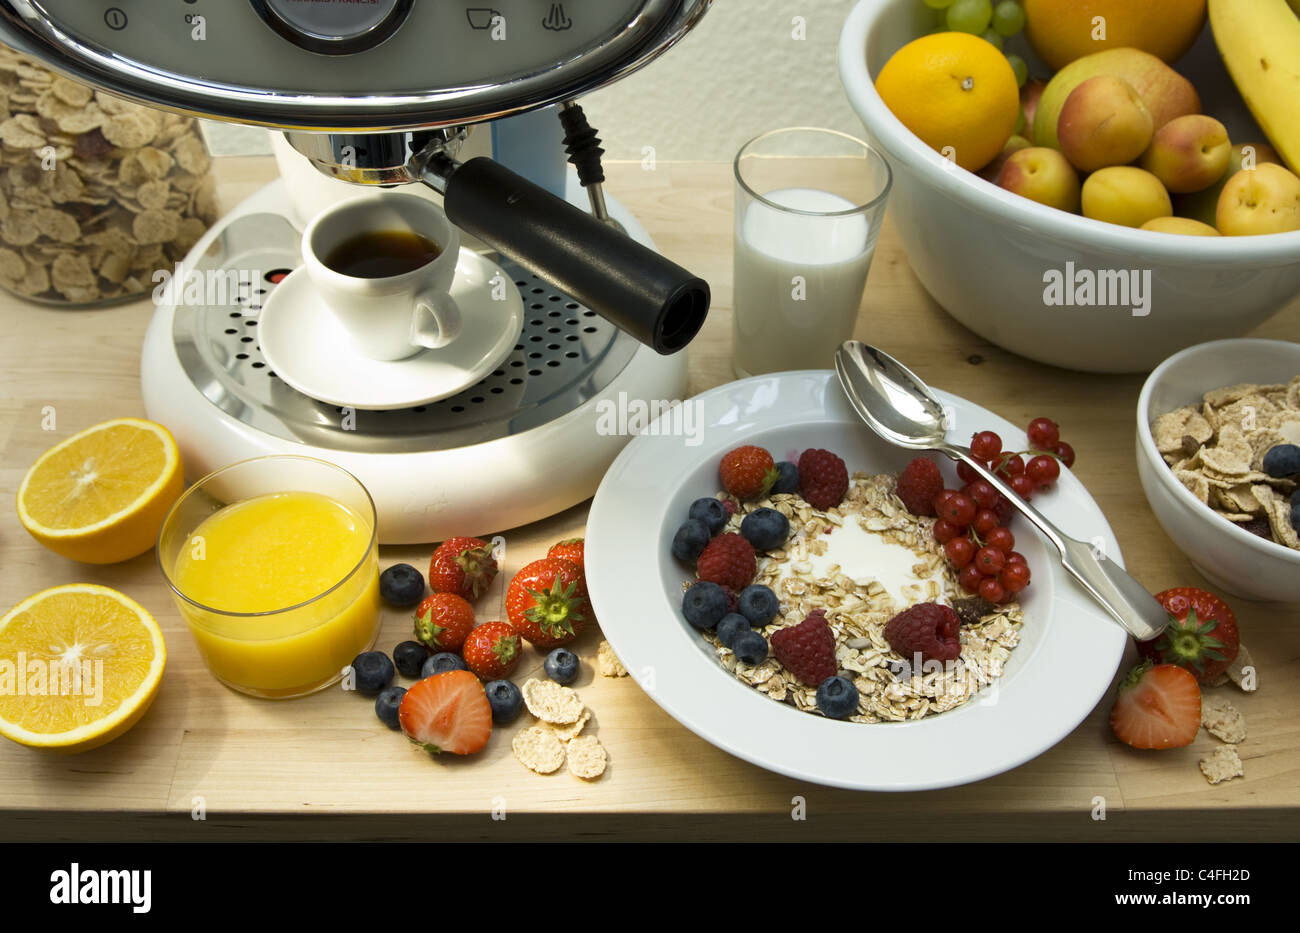 Espresso machine with breakfast Stock Photo